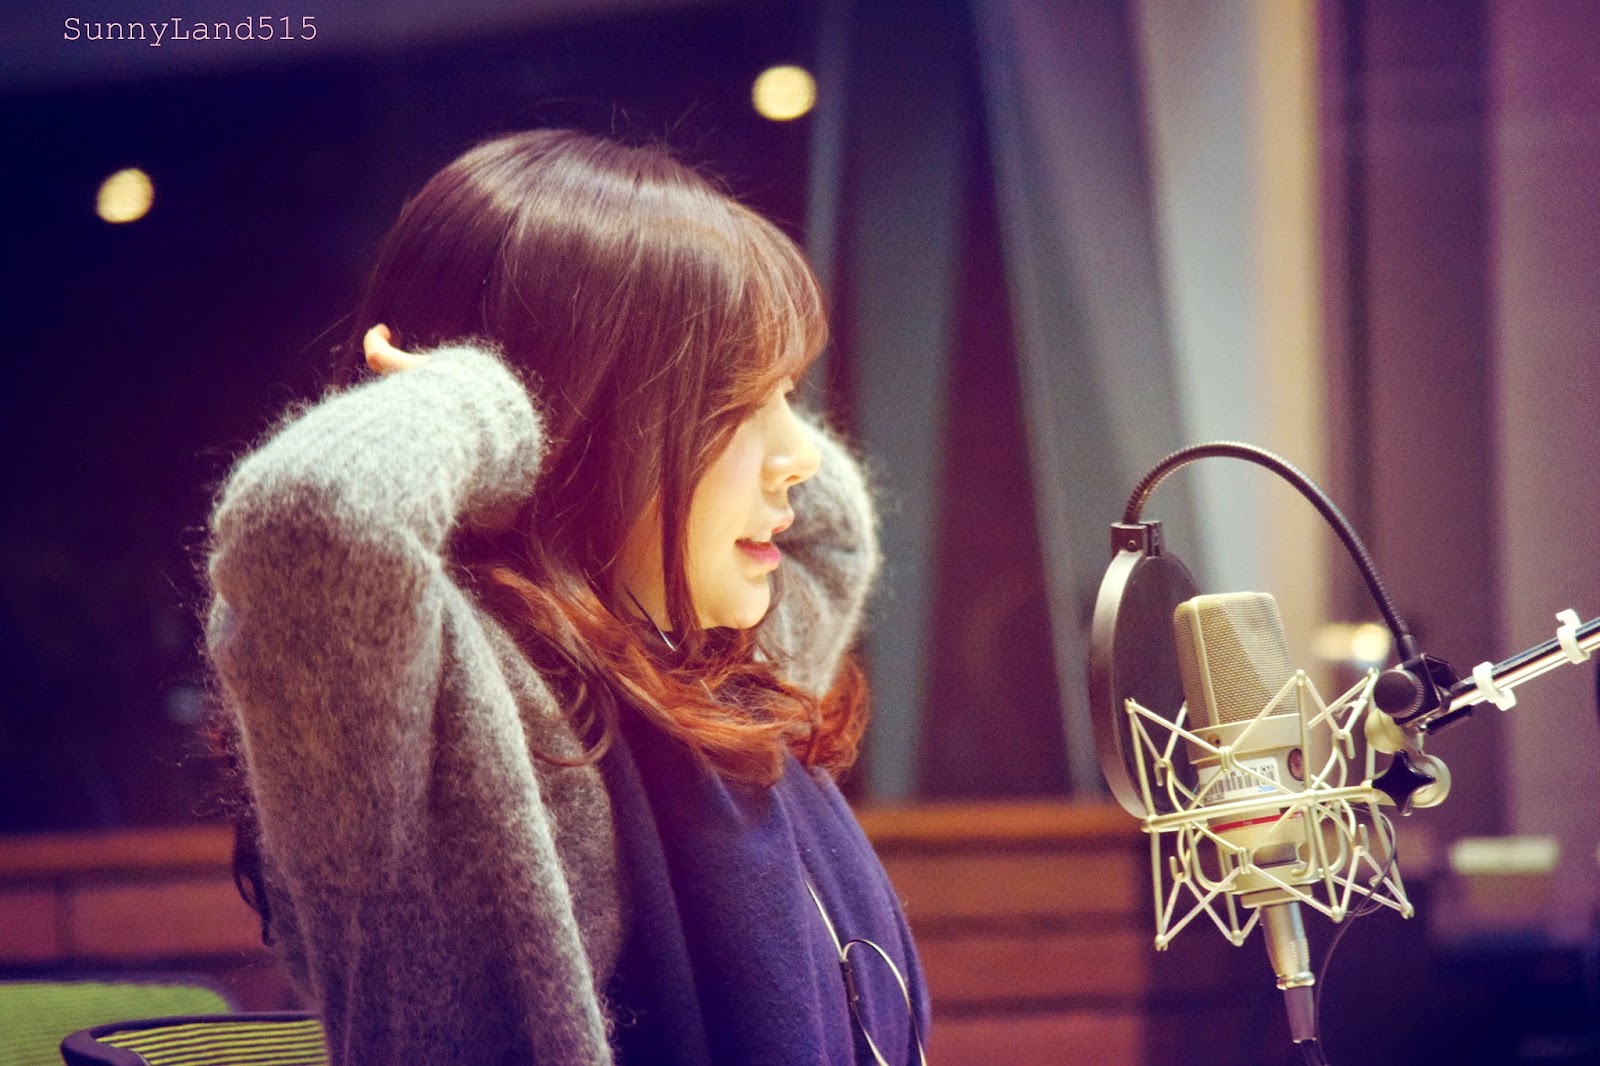 [OTHER][06-02-2015]Hình ảnh mới nhất từ DJ Sunny tại Radio MBC FM4U - "FM Date" - Page 10 DSC_0323_Fotor